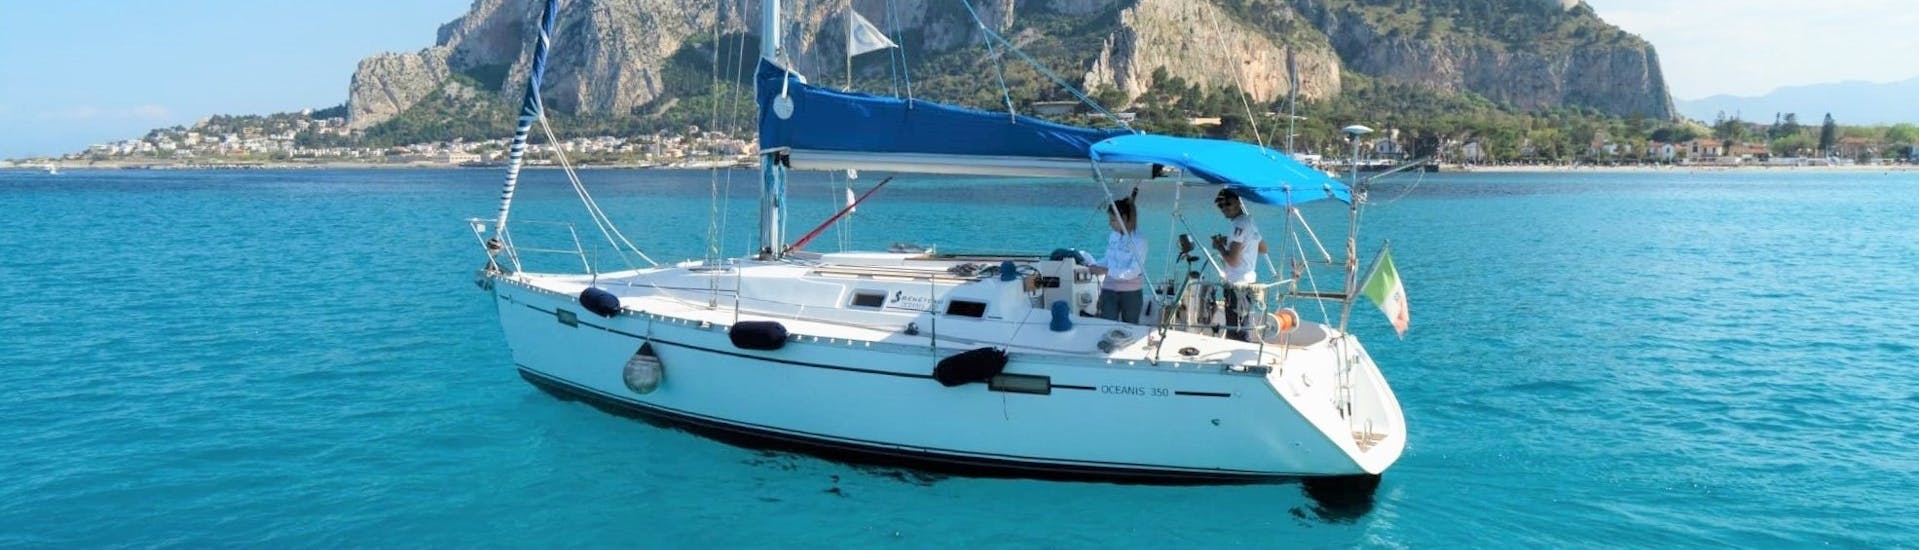 El velero utilizado por Seica Boat durante la excursión privada en barco desde Palermo a la playa de Mondello con aperitivo.